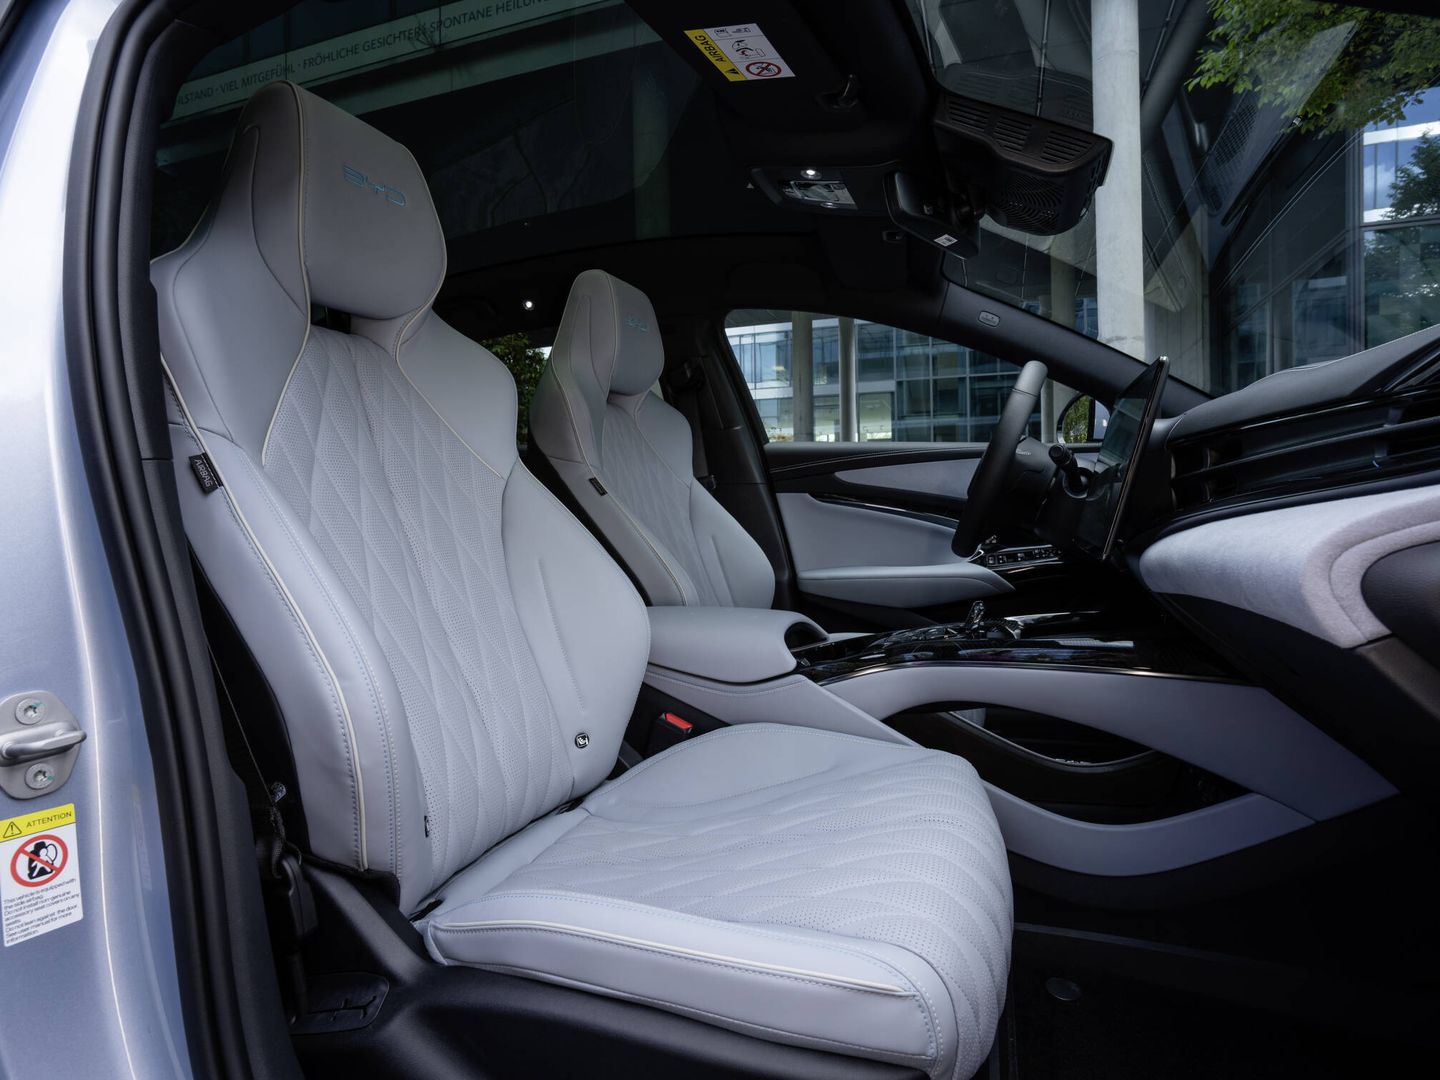 El puesto de conducción es cómodo por asientos y ergonomía. Y los materiales son de calidad.